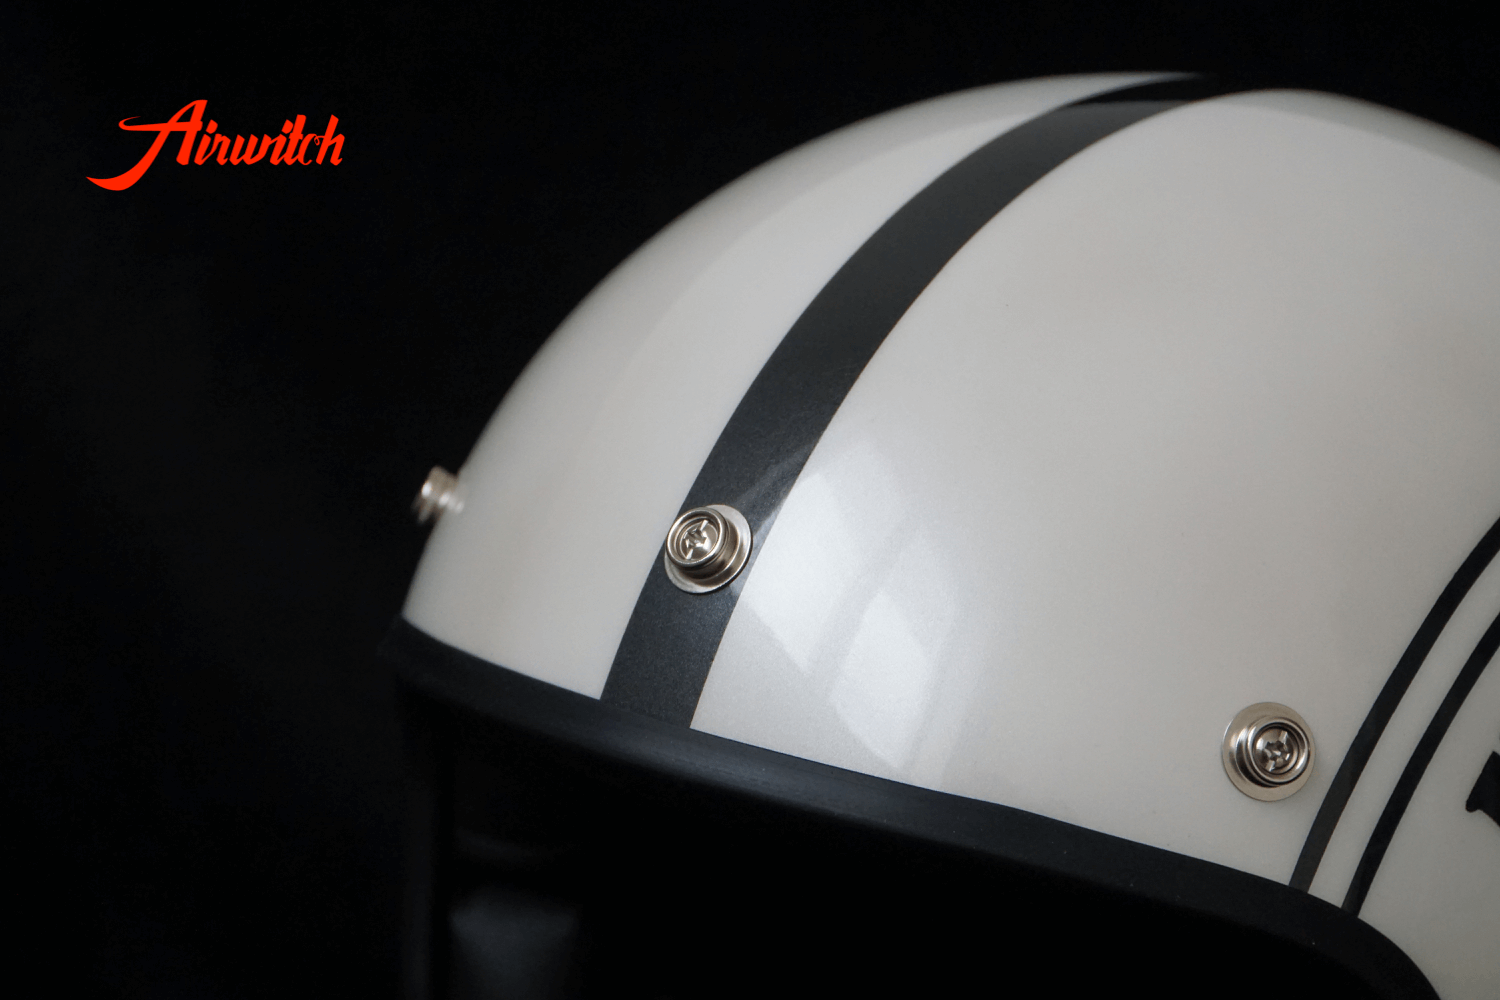 Custom Paint Helm mit Pearl und Totenkopf Airbrush